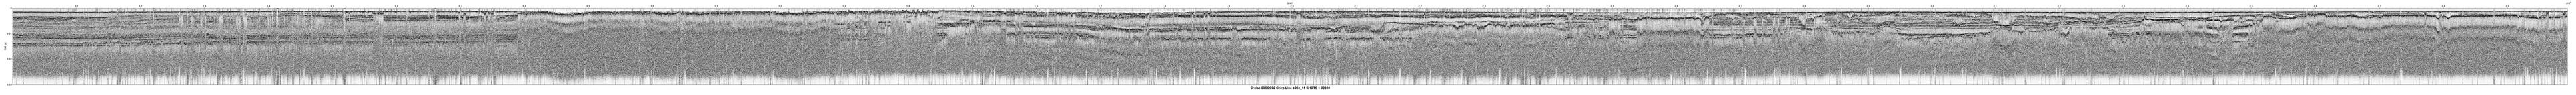 00SCC02 b00c_15 seismic profile image